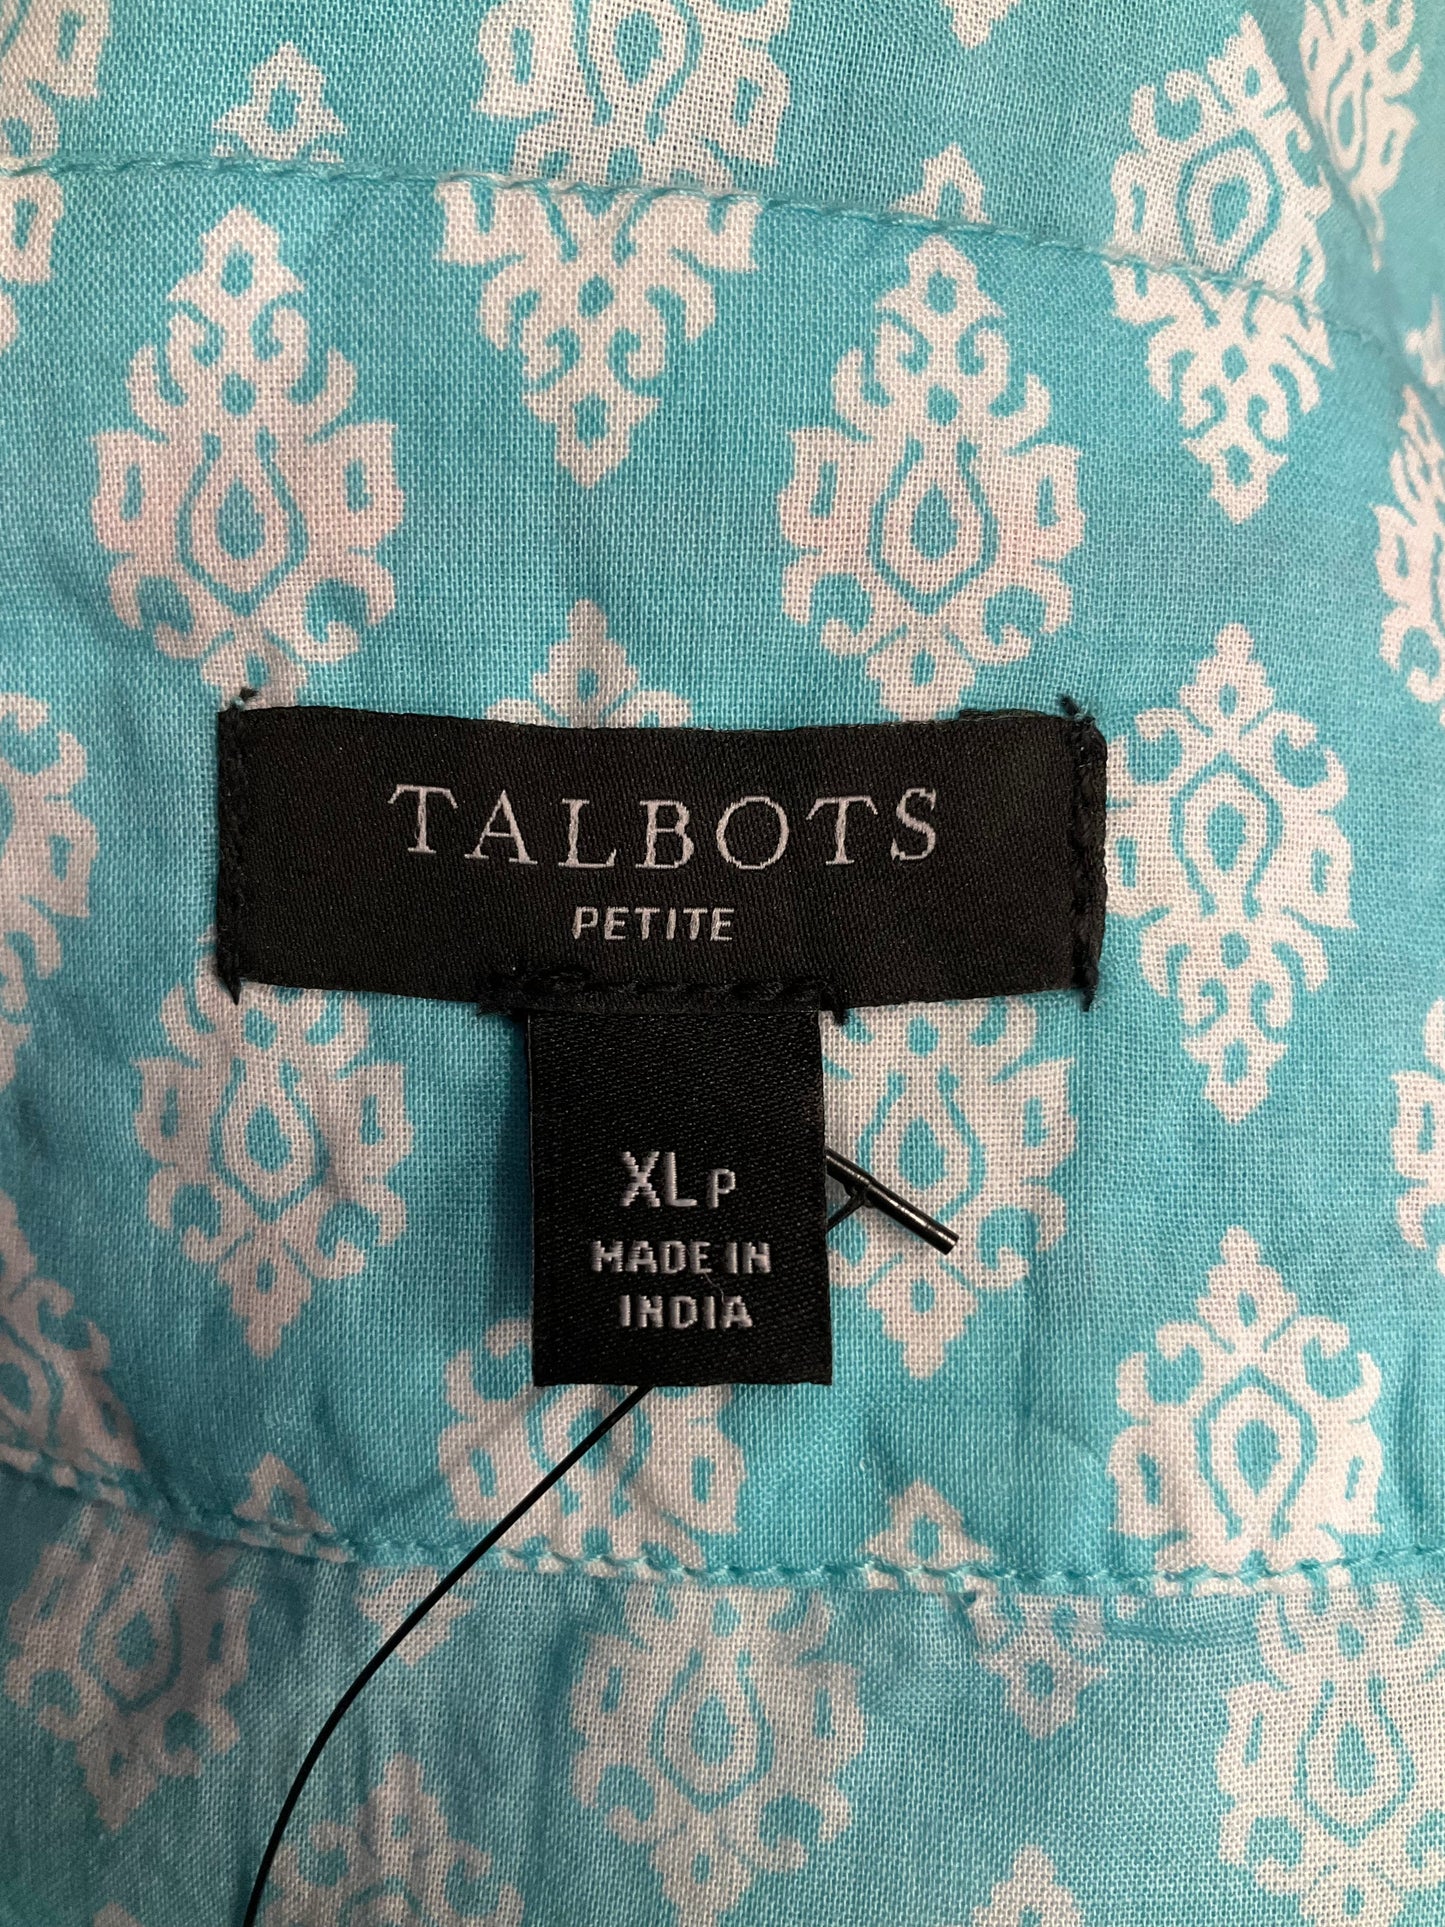 Blue & White Top Sleeveless Talbots, Size Xl